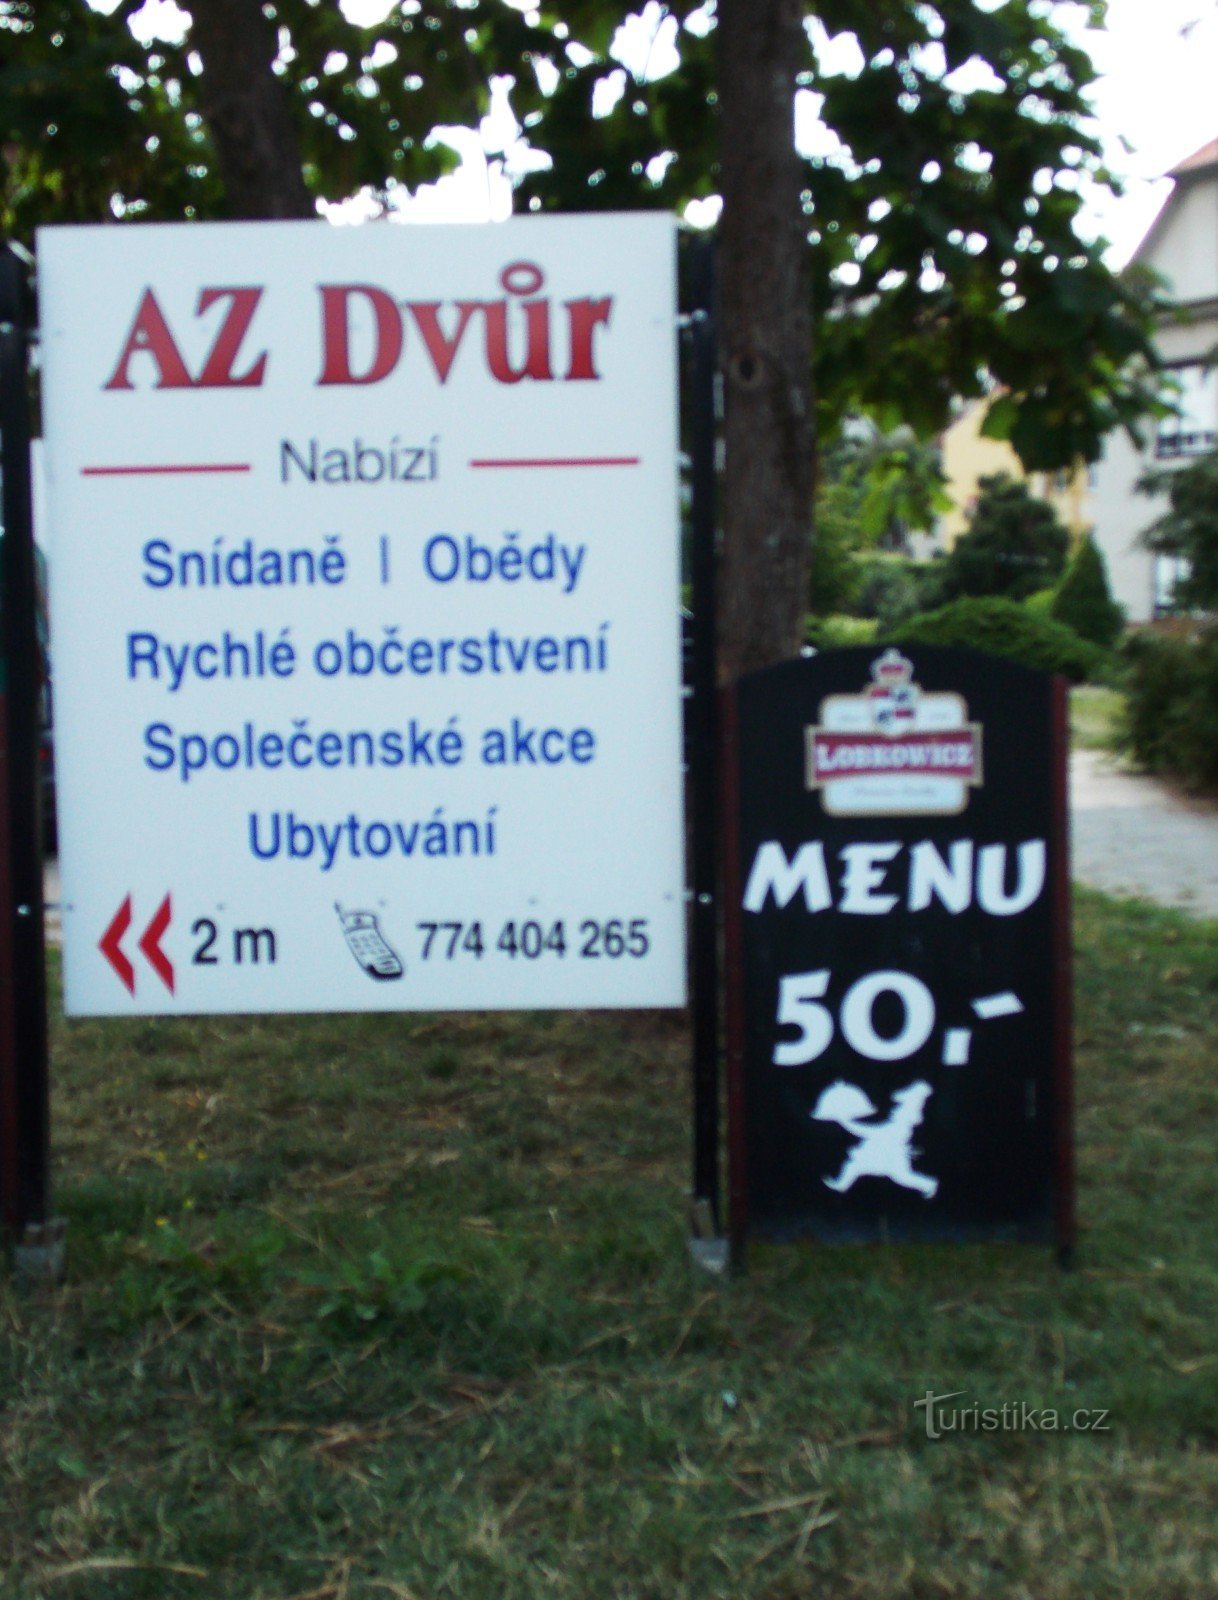 Ресторан AZ dvůr в Лугачовіце